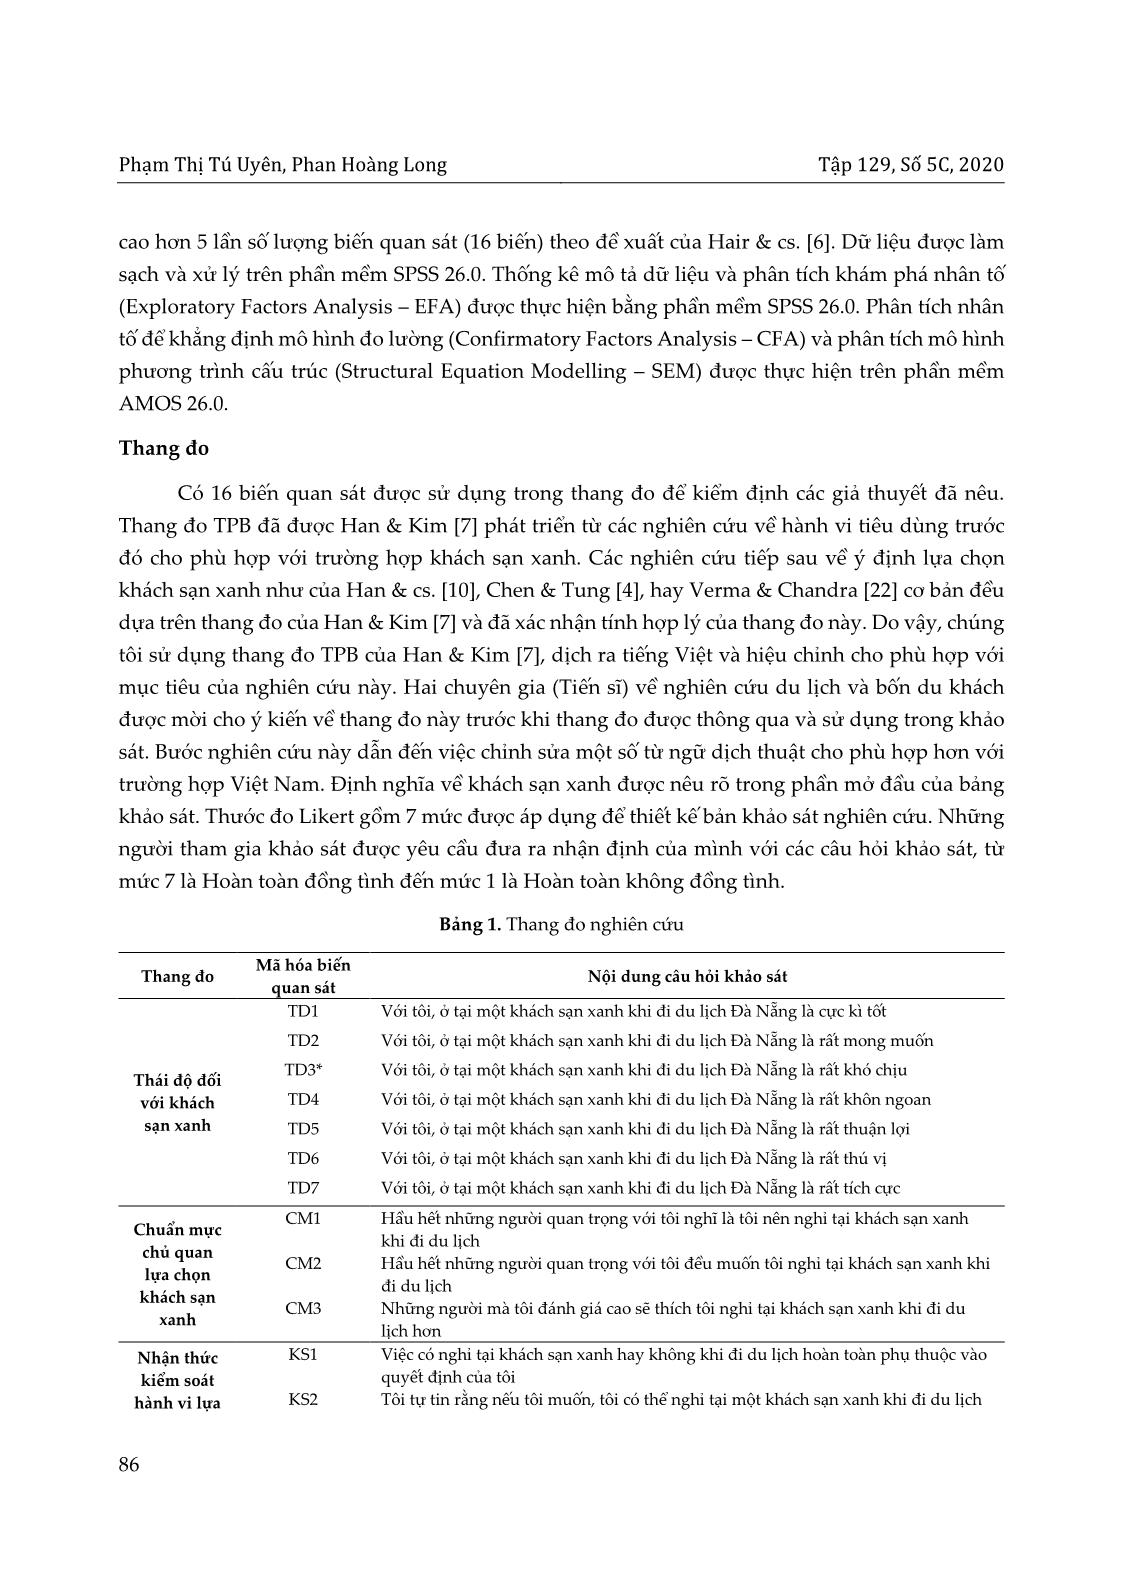 Ứng dụng lý thuyết hành vi dự định (TPB) trong nghiên cứu ý định lựa chọn khách sạn xanh của du khách tại thành phố Đà Nẵng trang 6